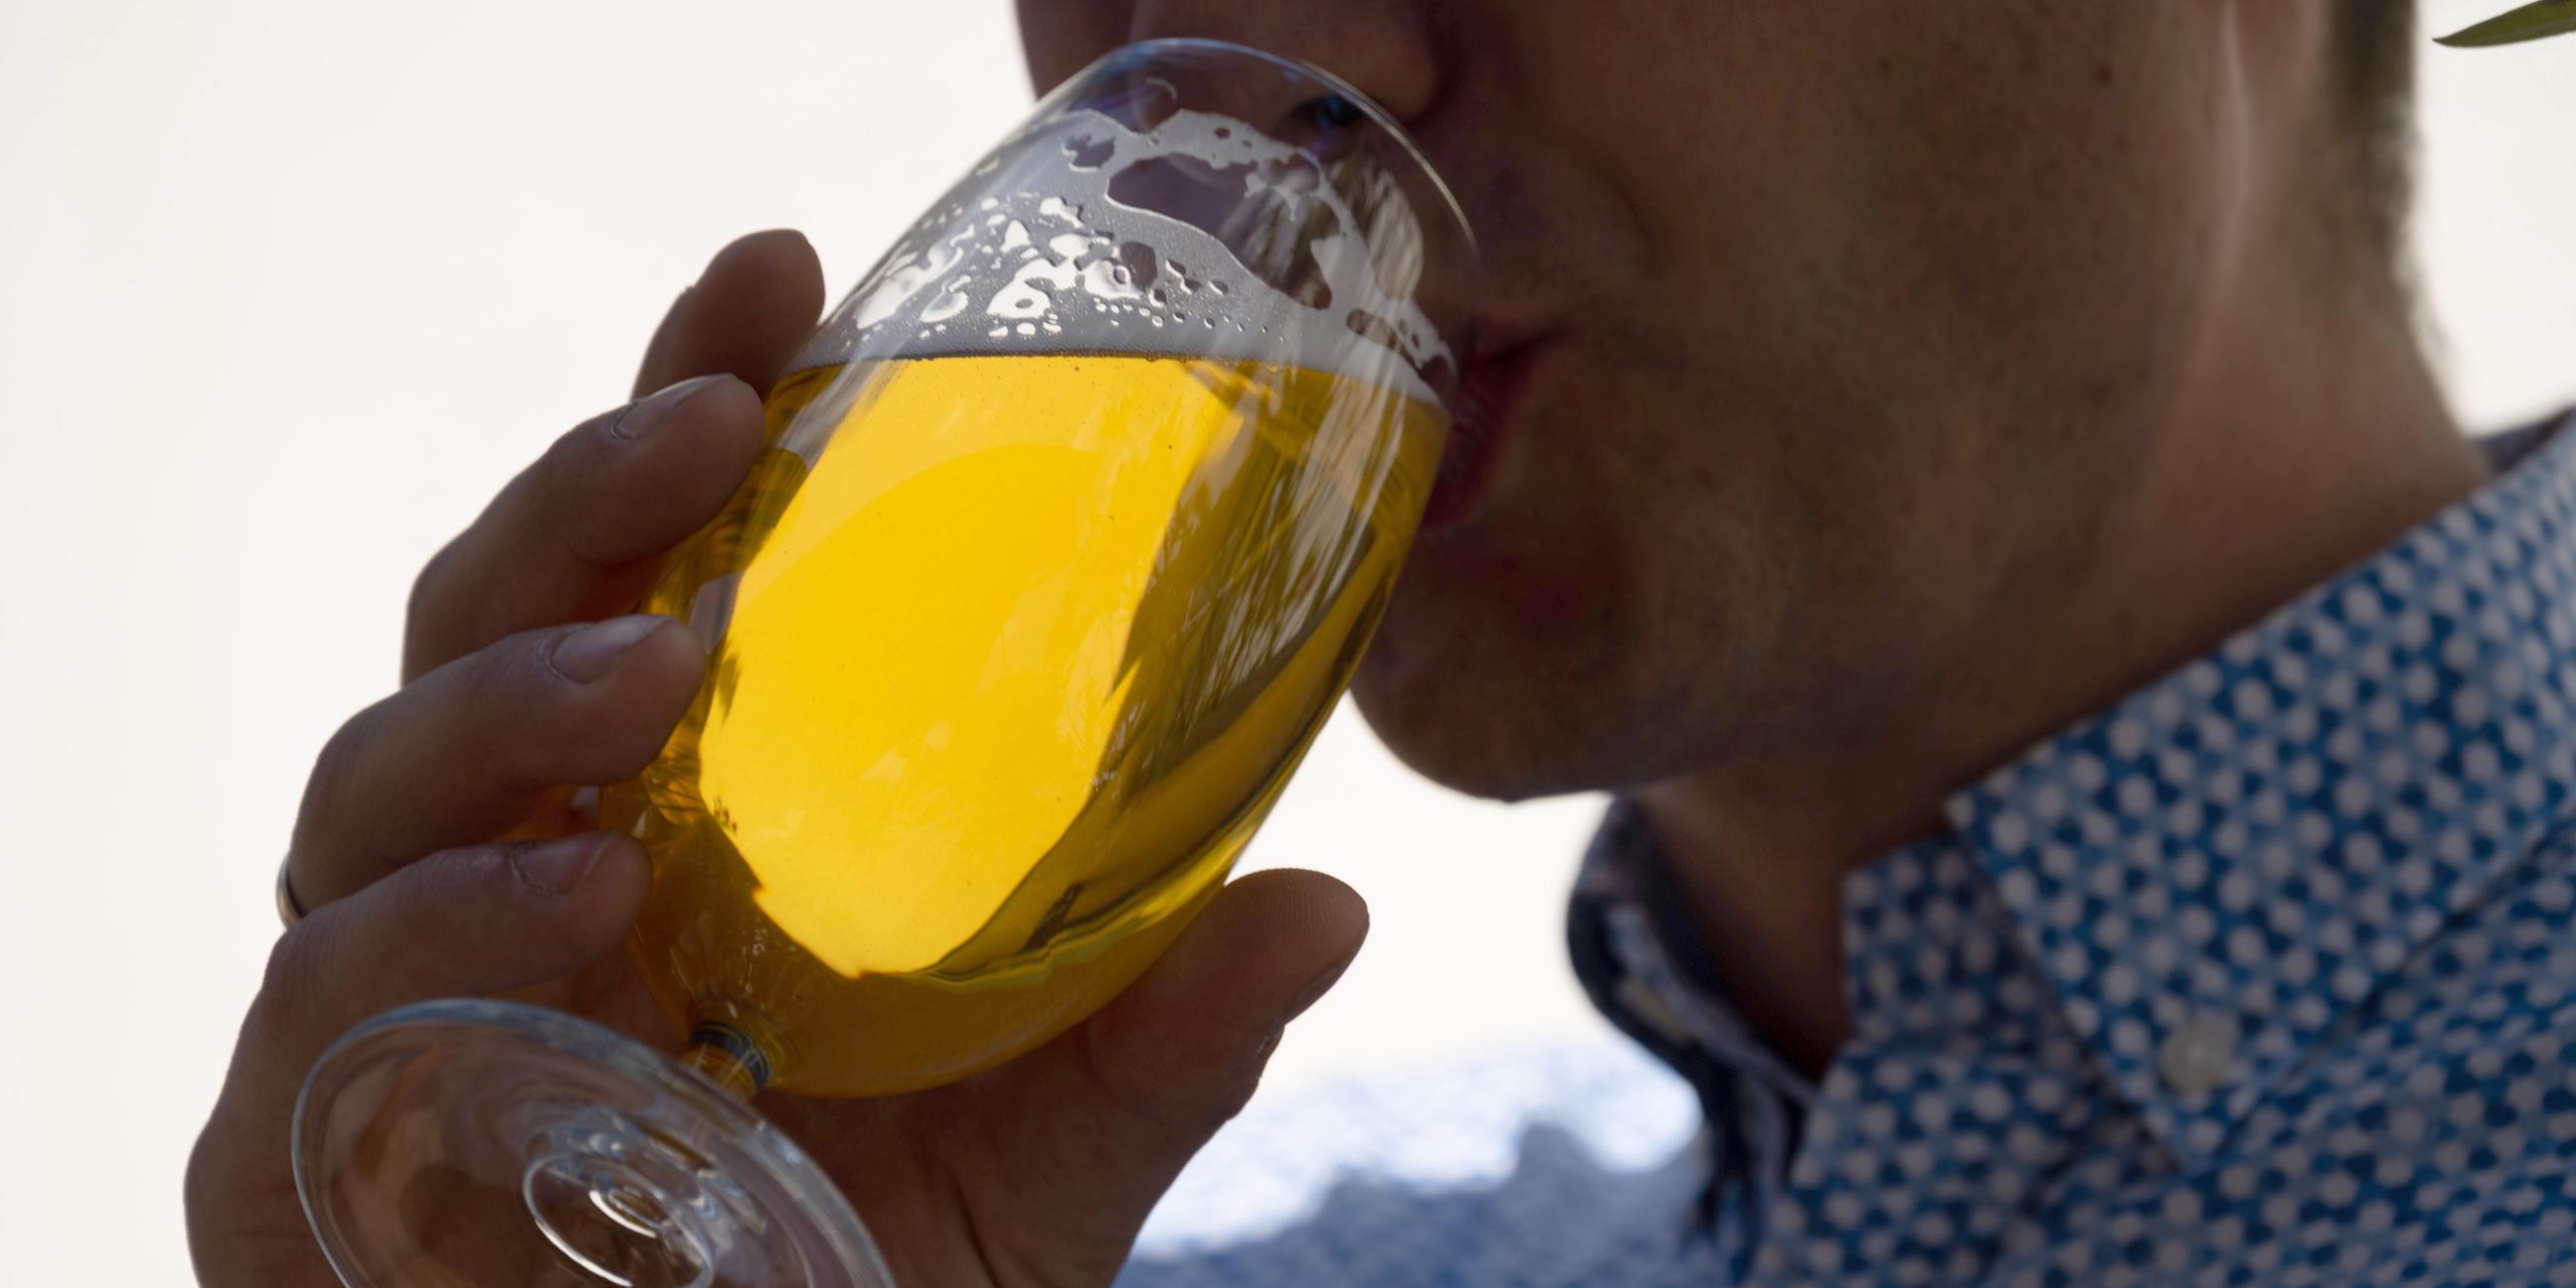 Eine Mann hält ein Glas mit frischem Bier in der Hand und nimmt einen Schluck davon